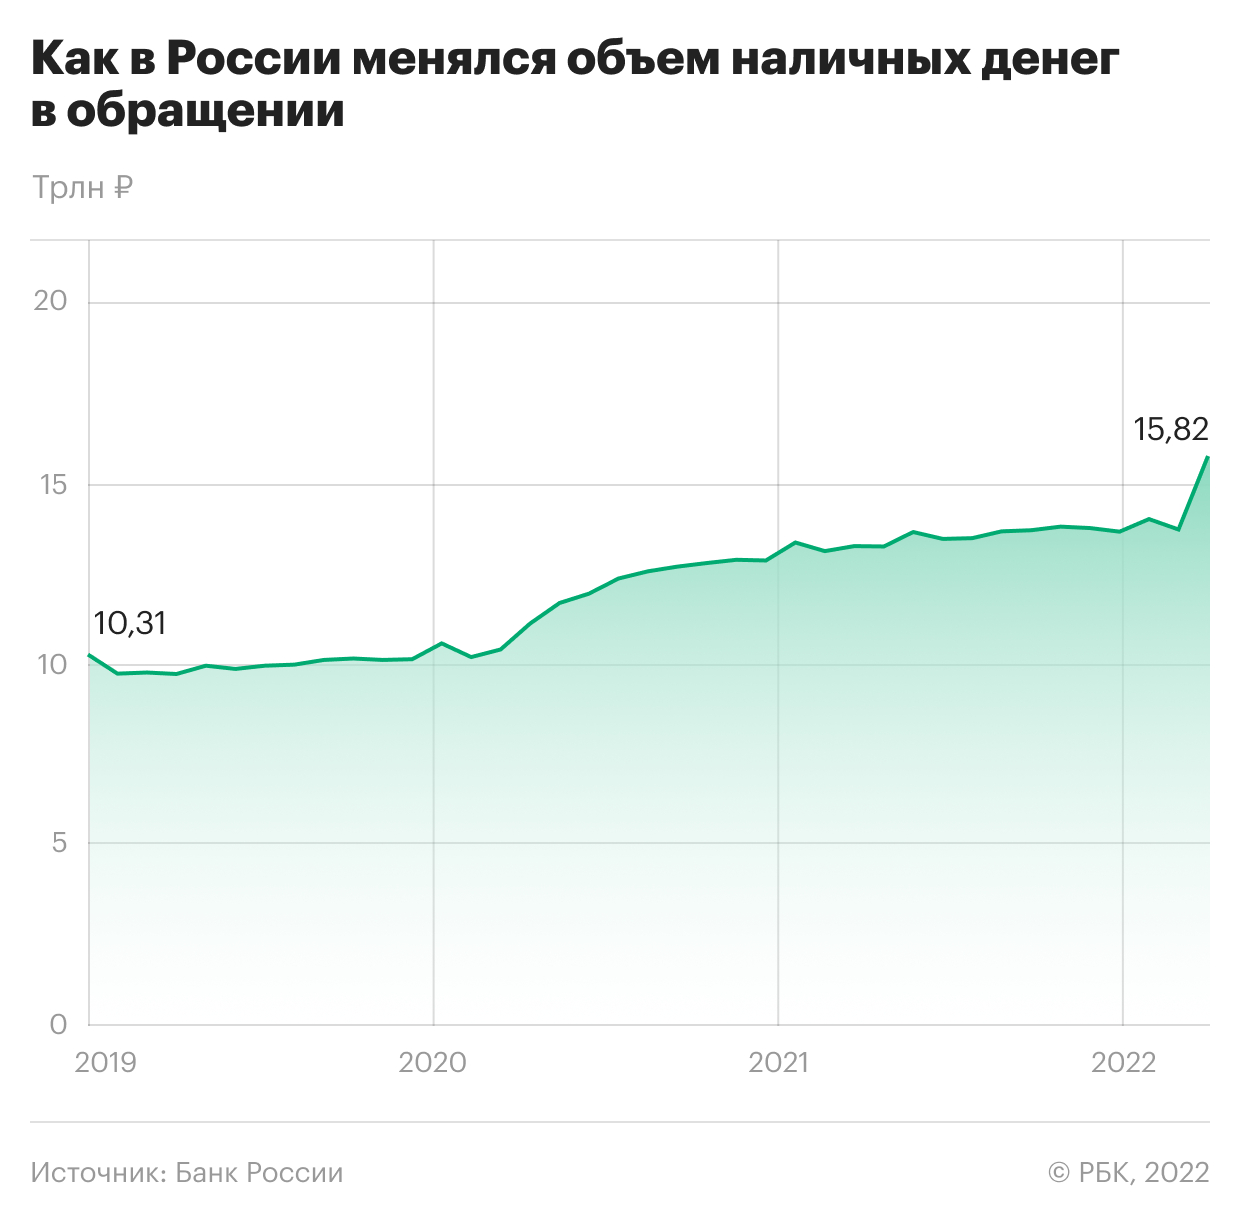 Объем наличных денег в России в феврале вырос максимально за 20 лет